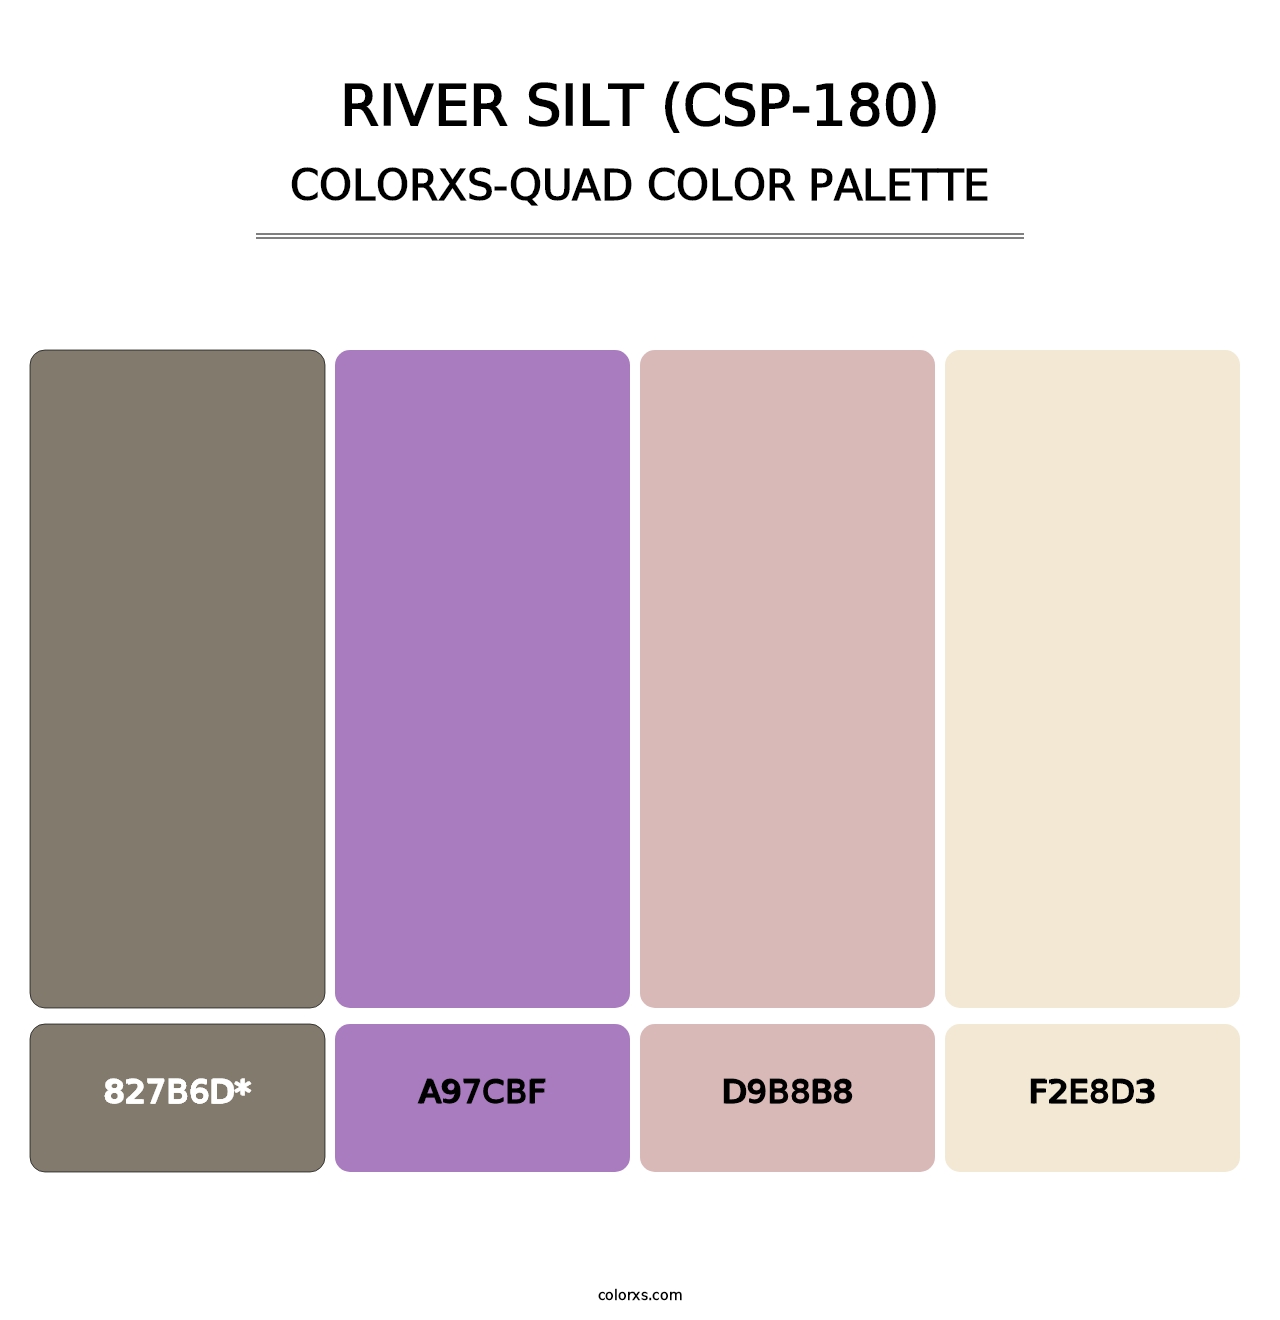 River Silt (CSP-180) - Colorxs Quad Palette